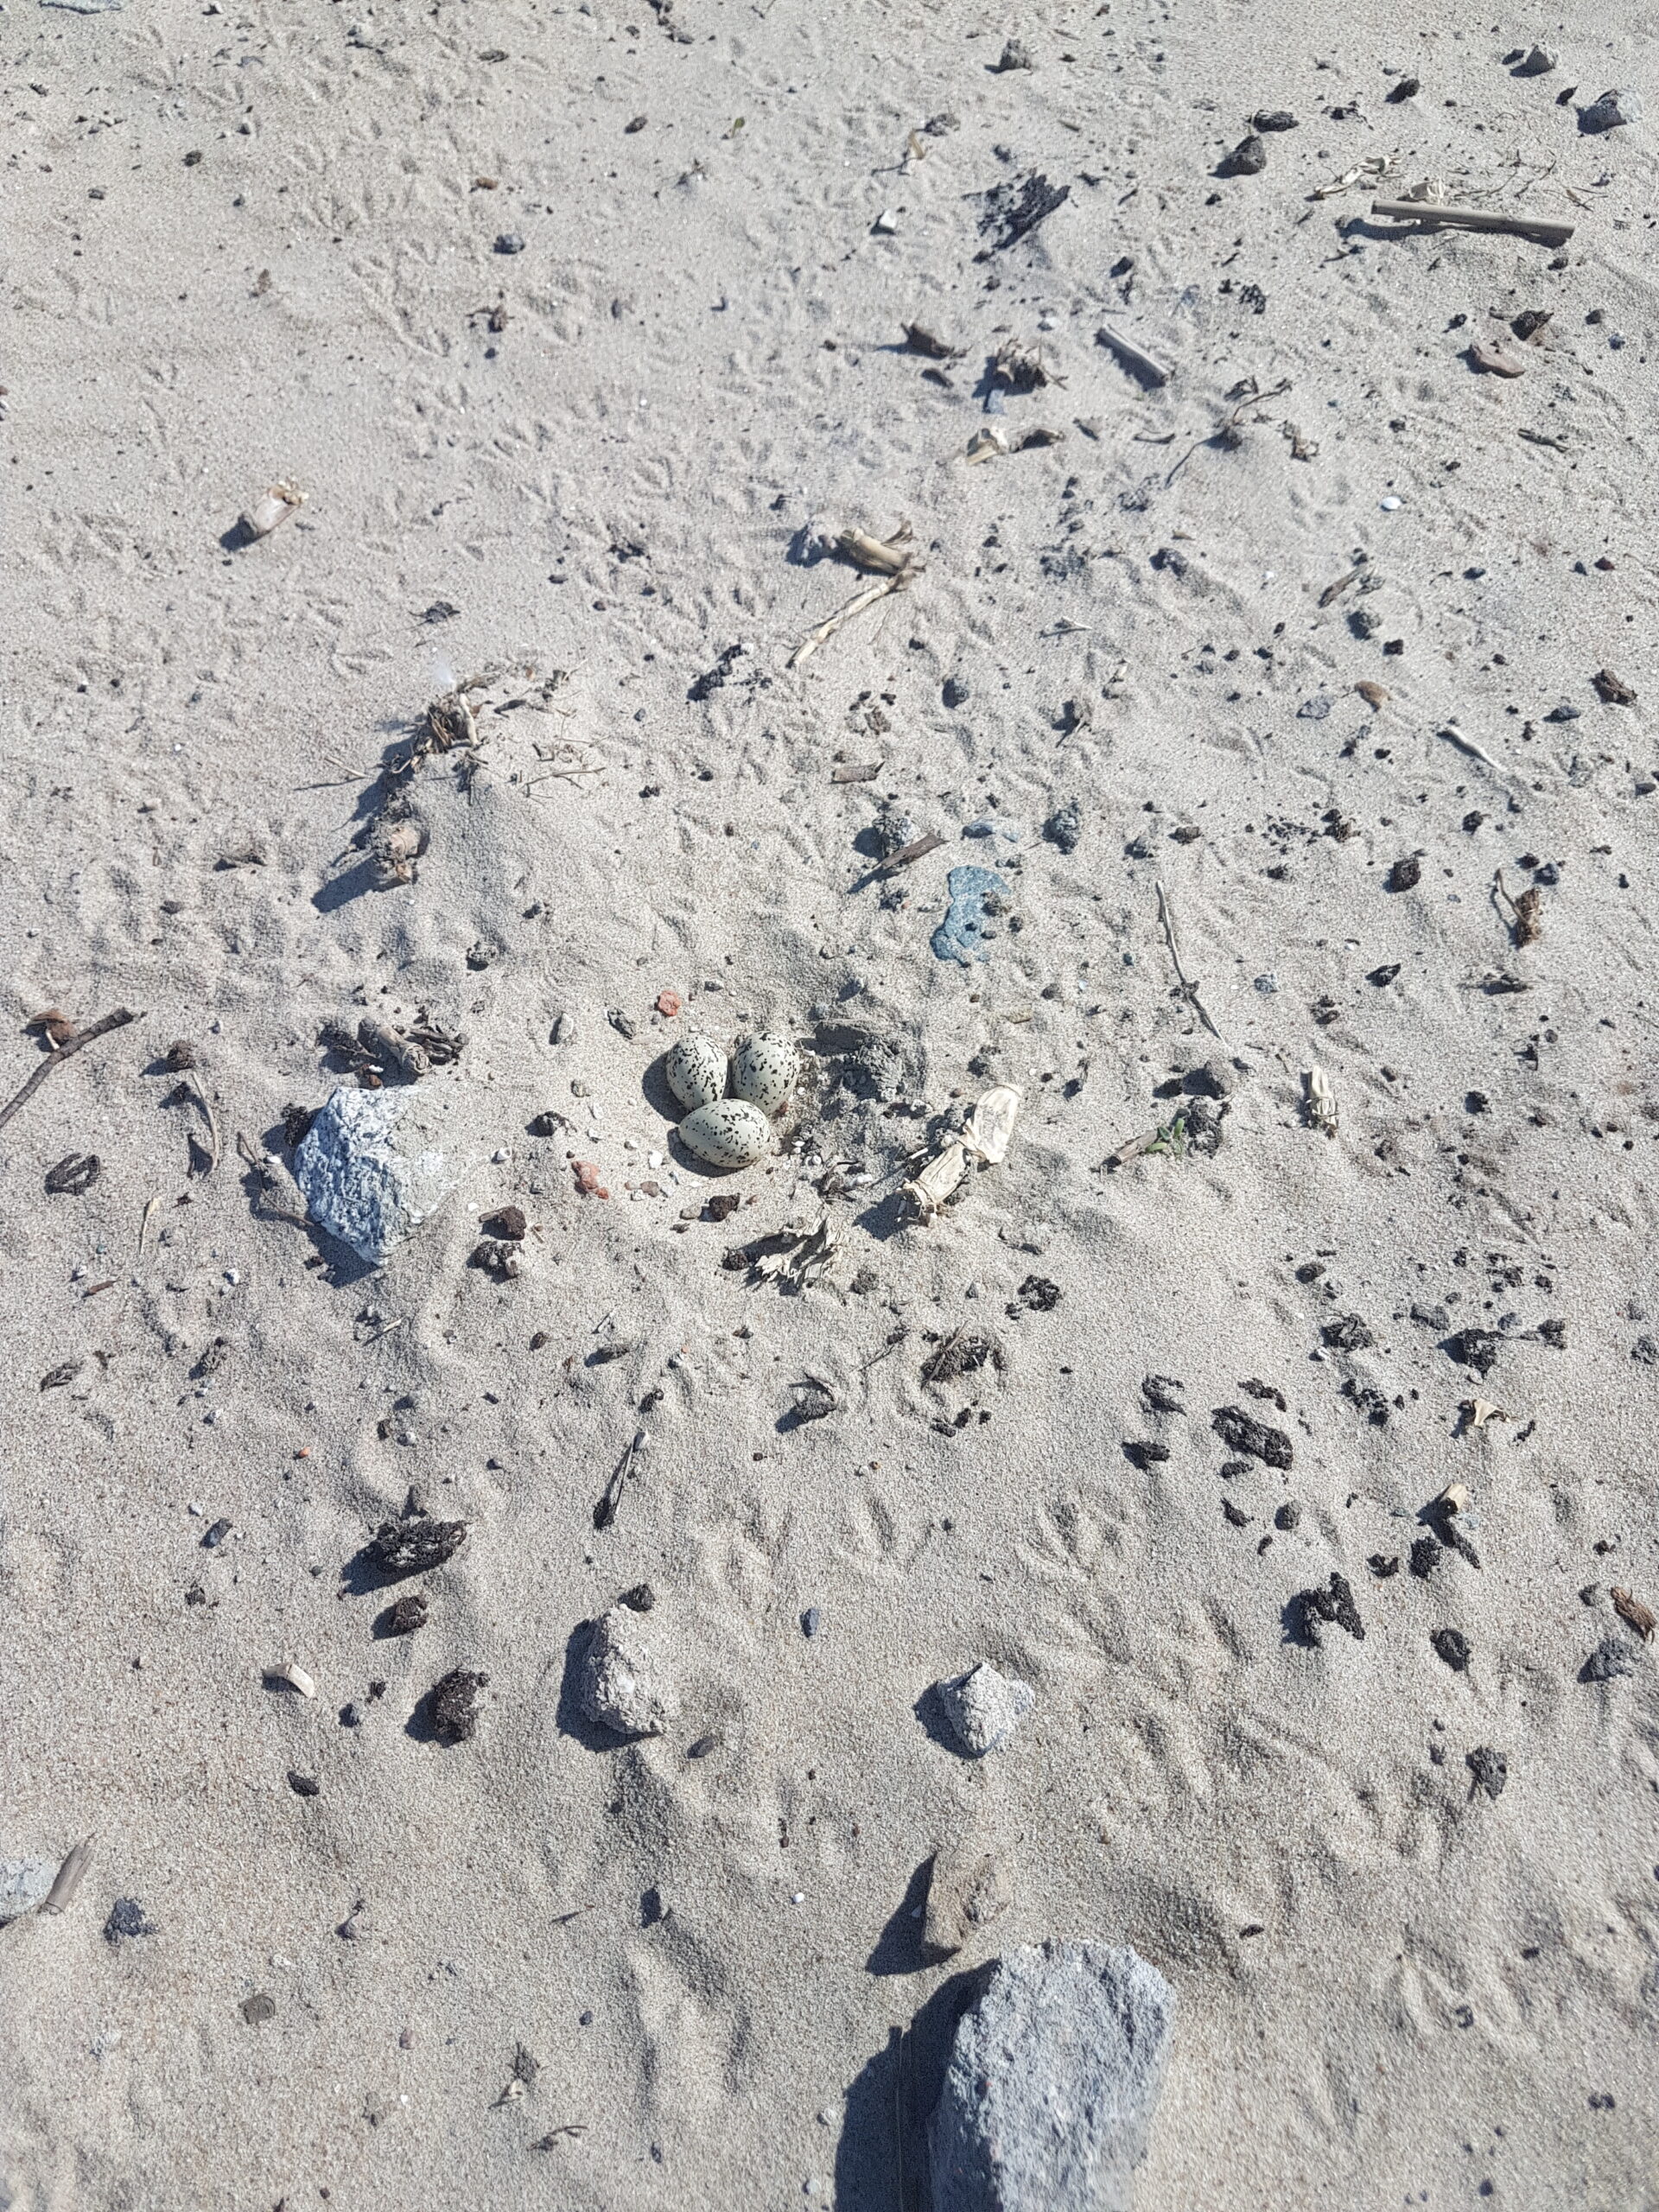 Gniazdo sieweczki obrożnej na tle plaży.